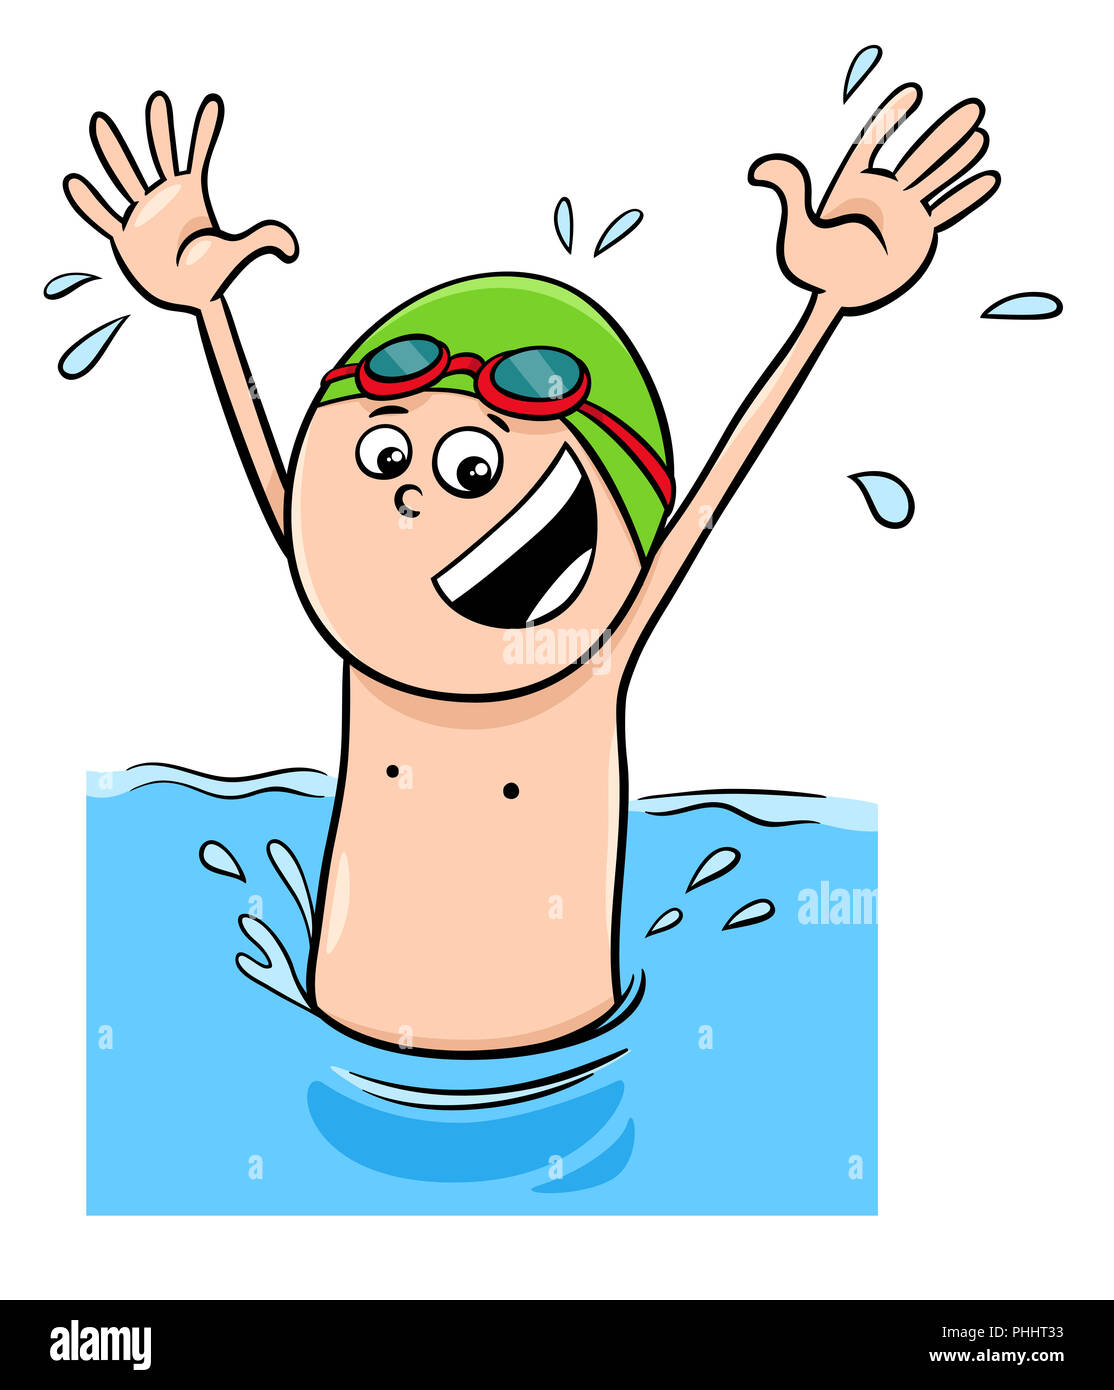 Cartoon boy Charakter schwimmen im Wasser Stockfotografie - Alamy